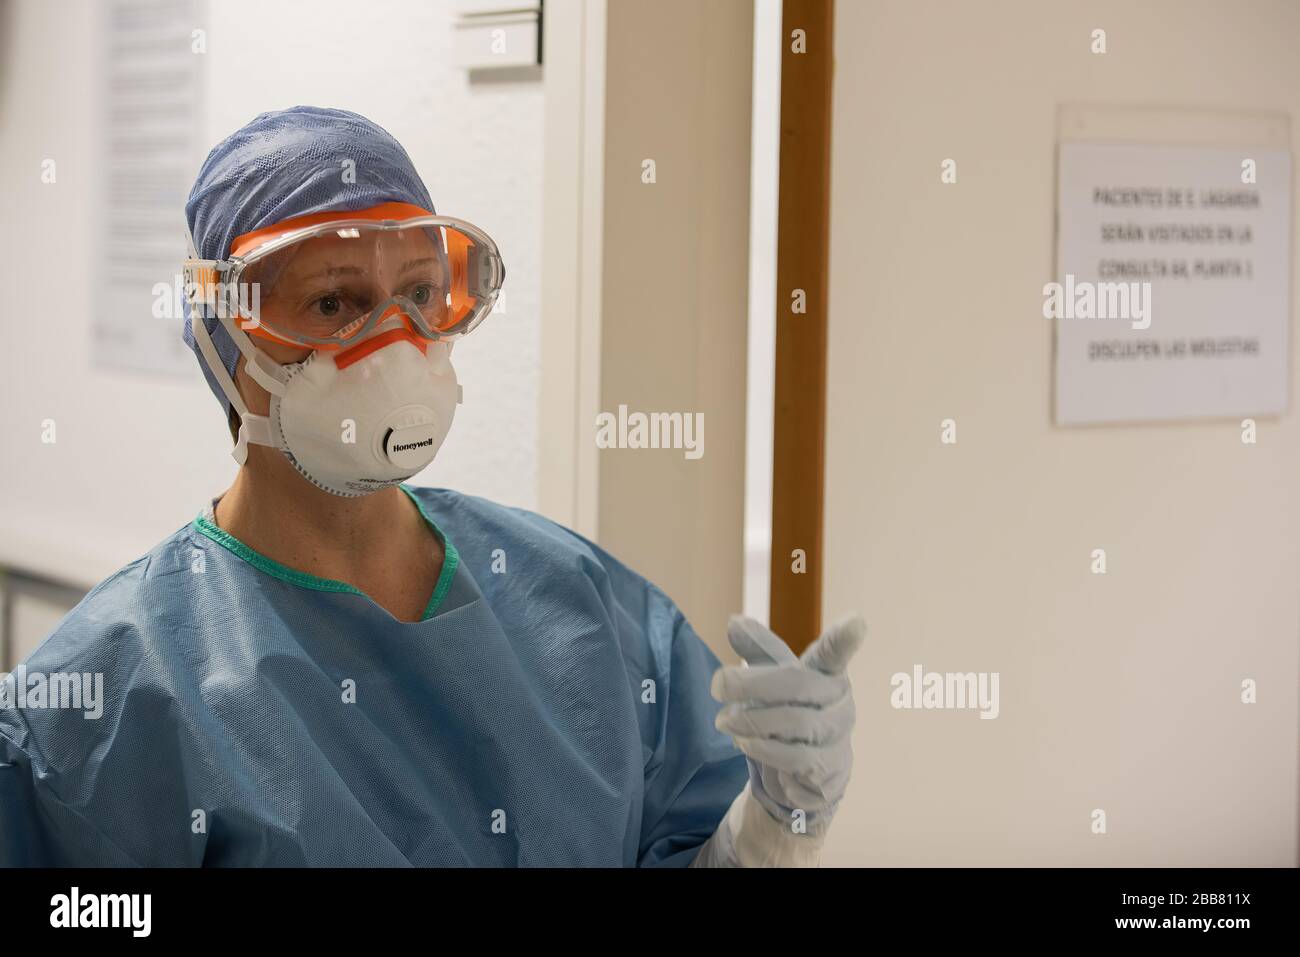 Medizinisches Personal in Barcelona, Spanien, testet und behandelt Patienten, die an COVID-19 leiden. Alle Mitarbeiter verwenden eine geeignete persönliche Schutzausrüstung (PSA). (FOTO: Krankenhaus - Barcelona) Stockfoto